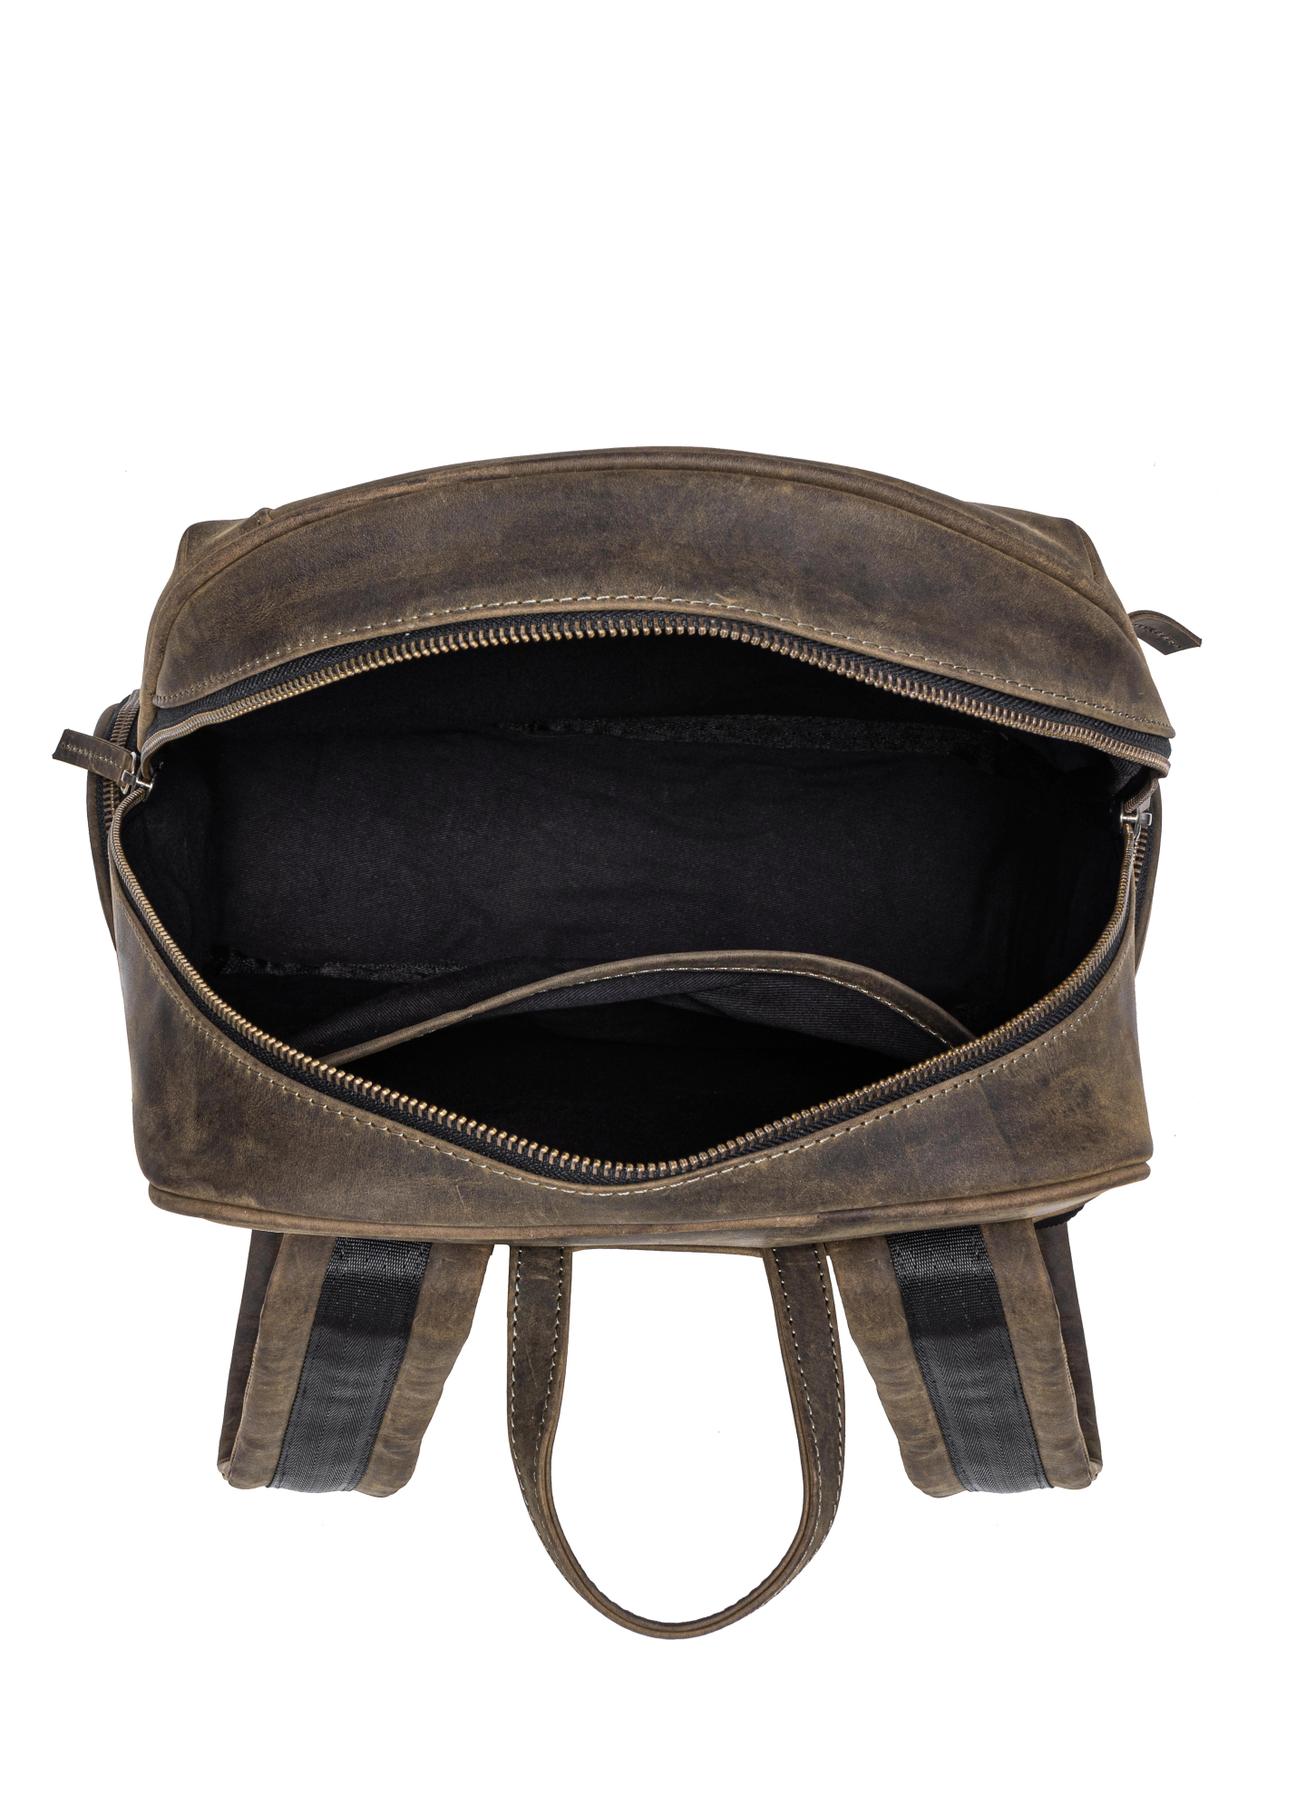 Skórzany plecak męski khaki TORMS-0300-51(W23)